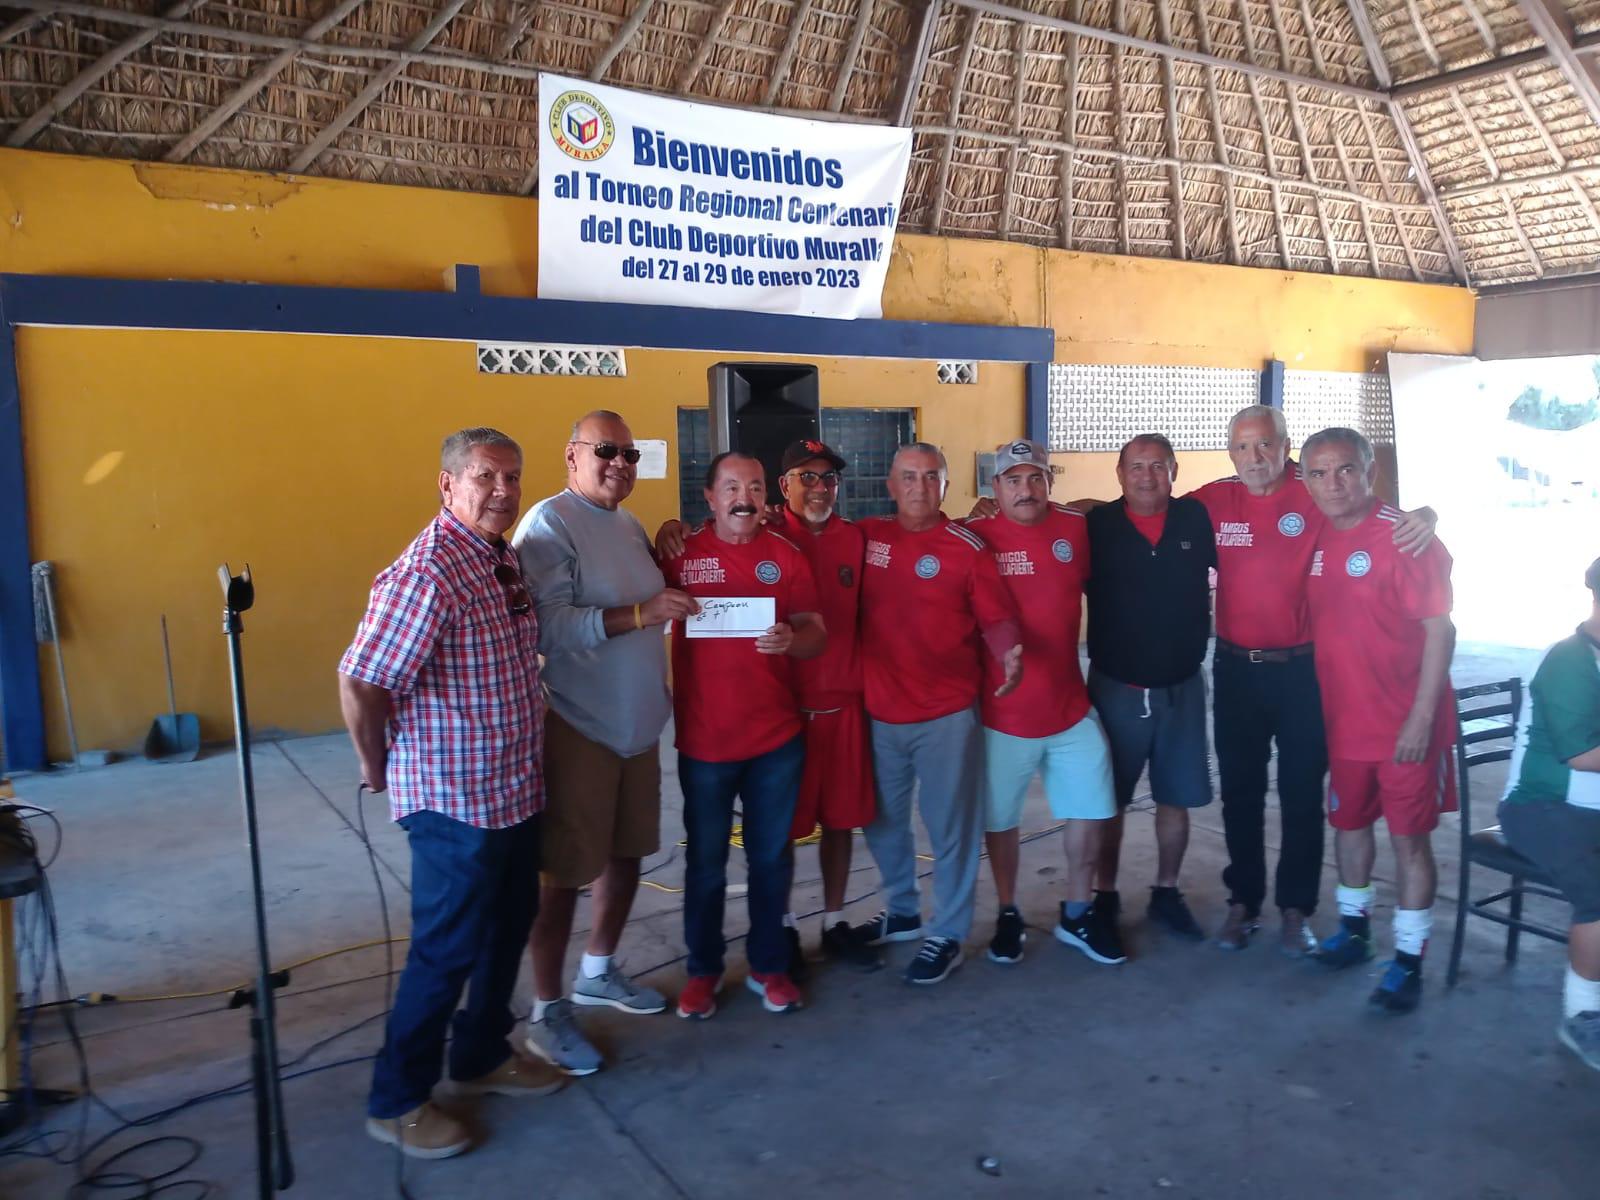 $!La Cruz de Elota y Mazatlán se coronan en Torneo Regional Centenario